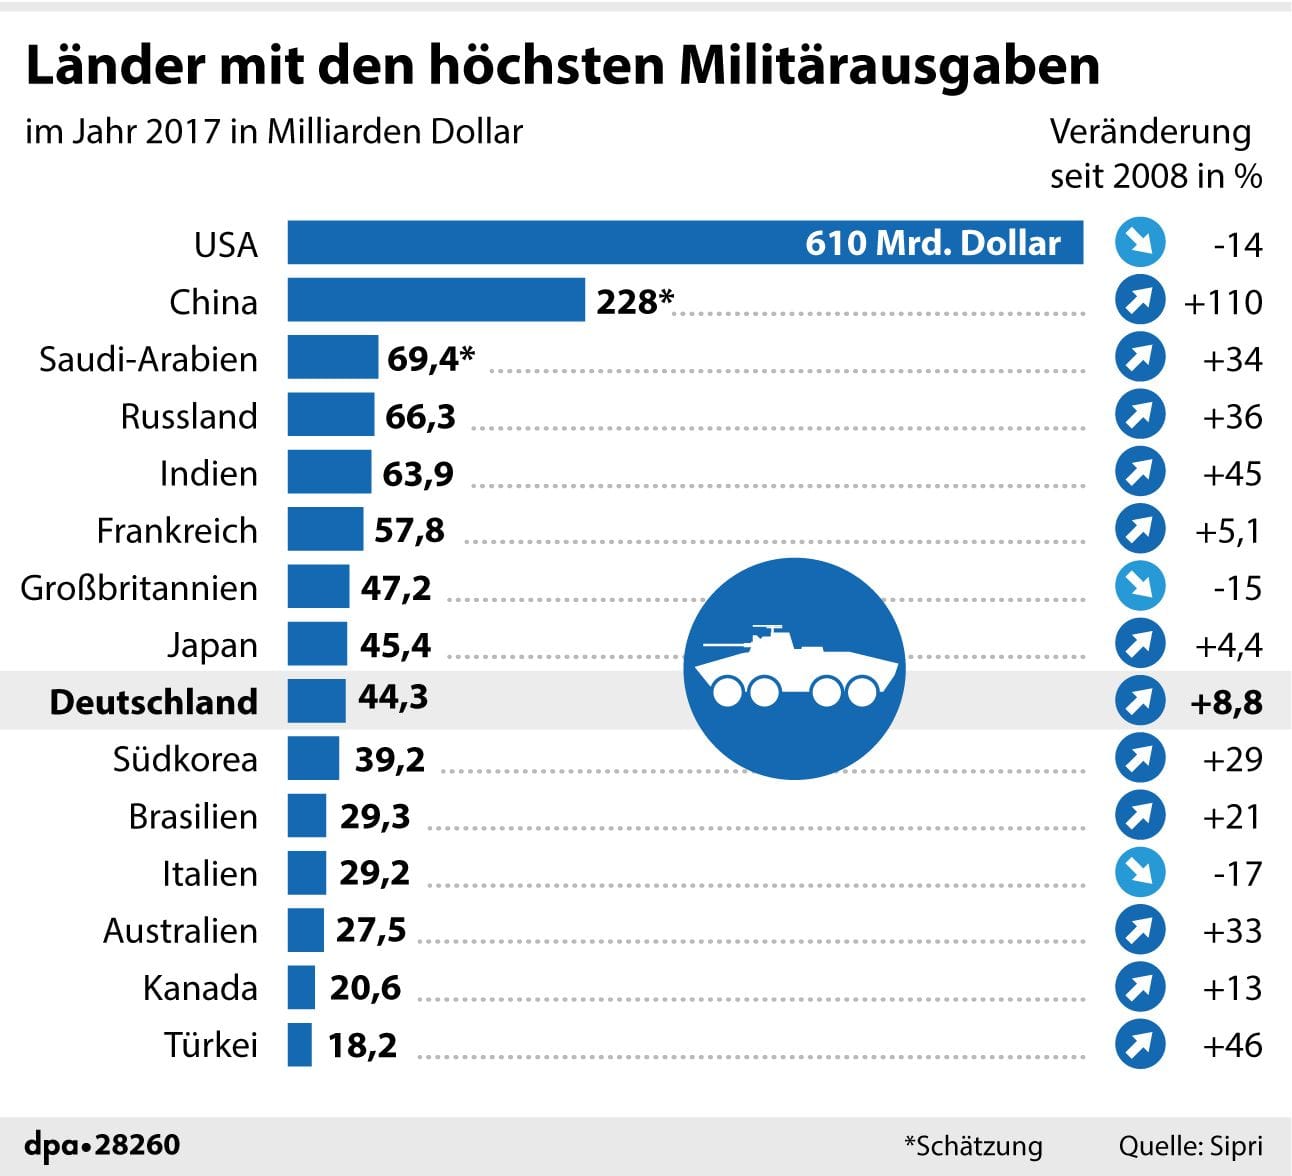 Länder mit den höchsten Rüstungsausgaben 2017 weltweit im Vergleich: In Deutschland sind die Ausgaben im Vergleich zu 2008 um 8,8 Prozent gestiegen.